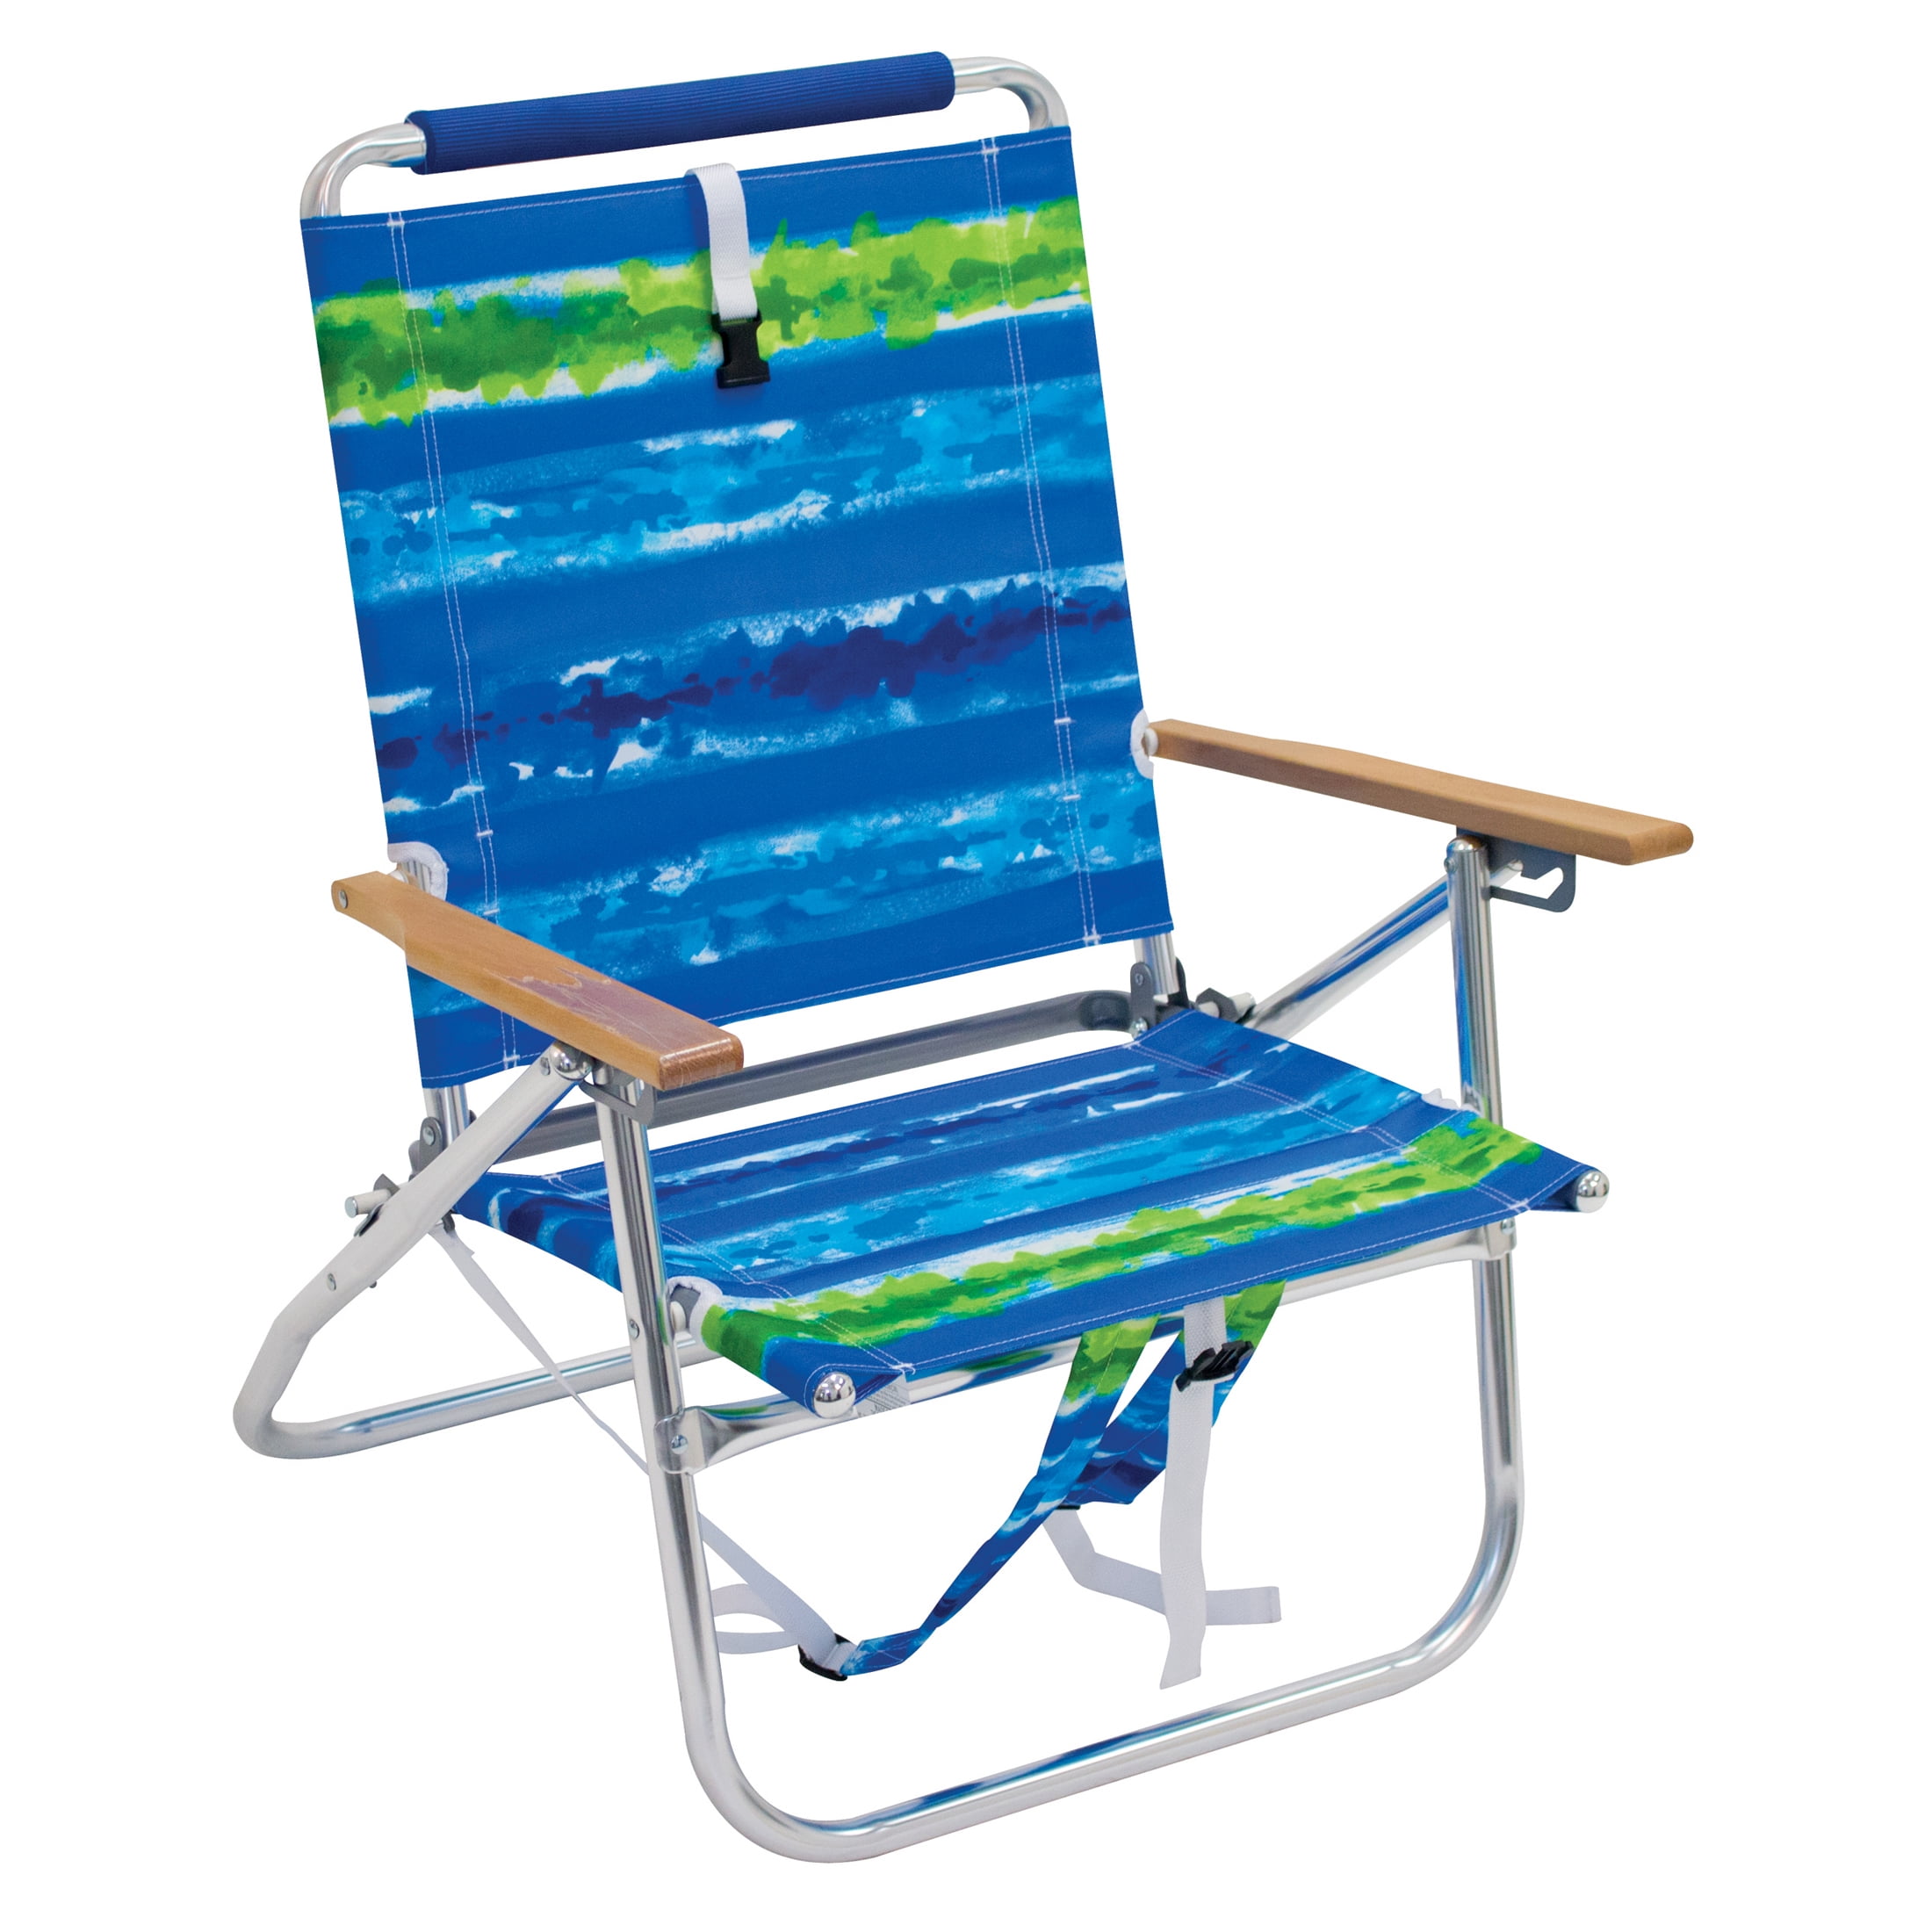 Backpack Chair Walmart - ahubydesign